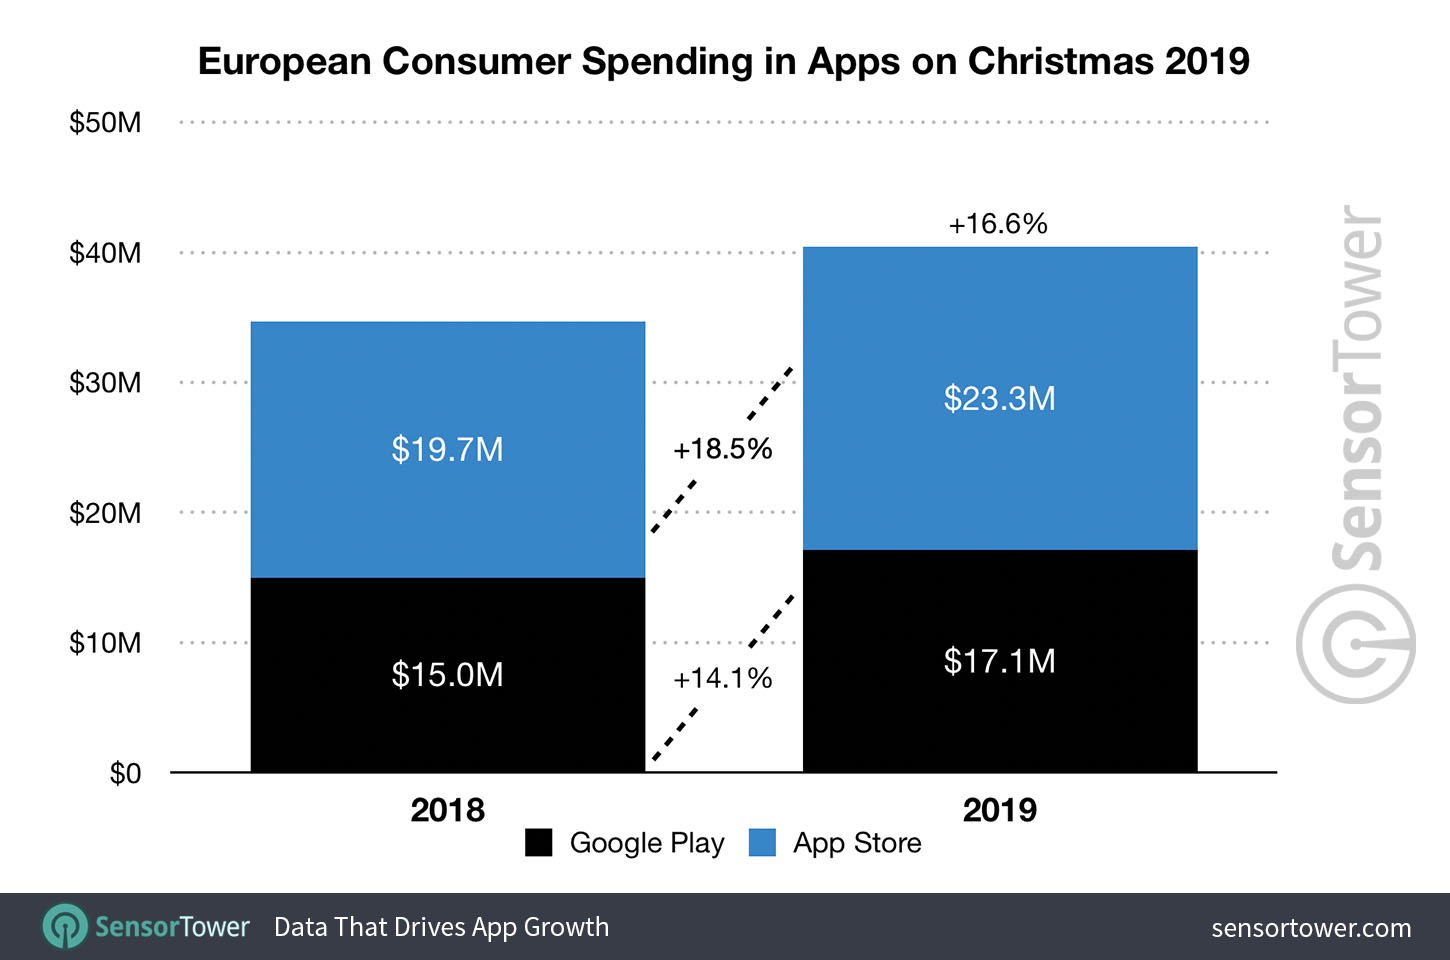 European consumer spending in apps on Christmas 2019